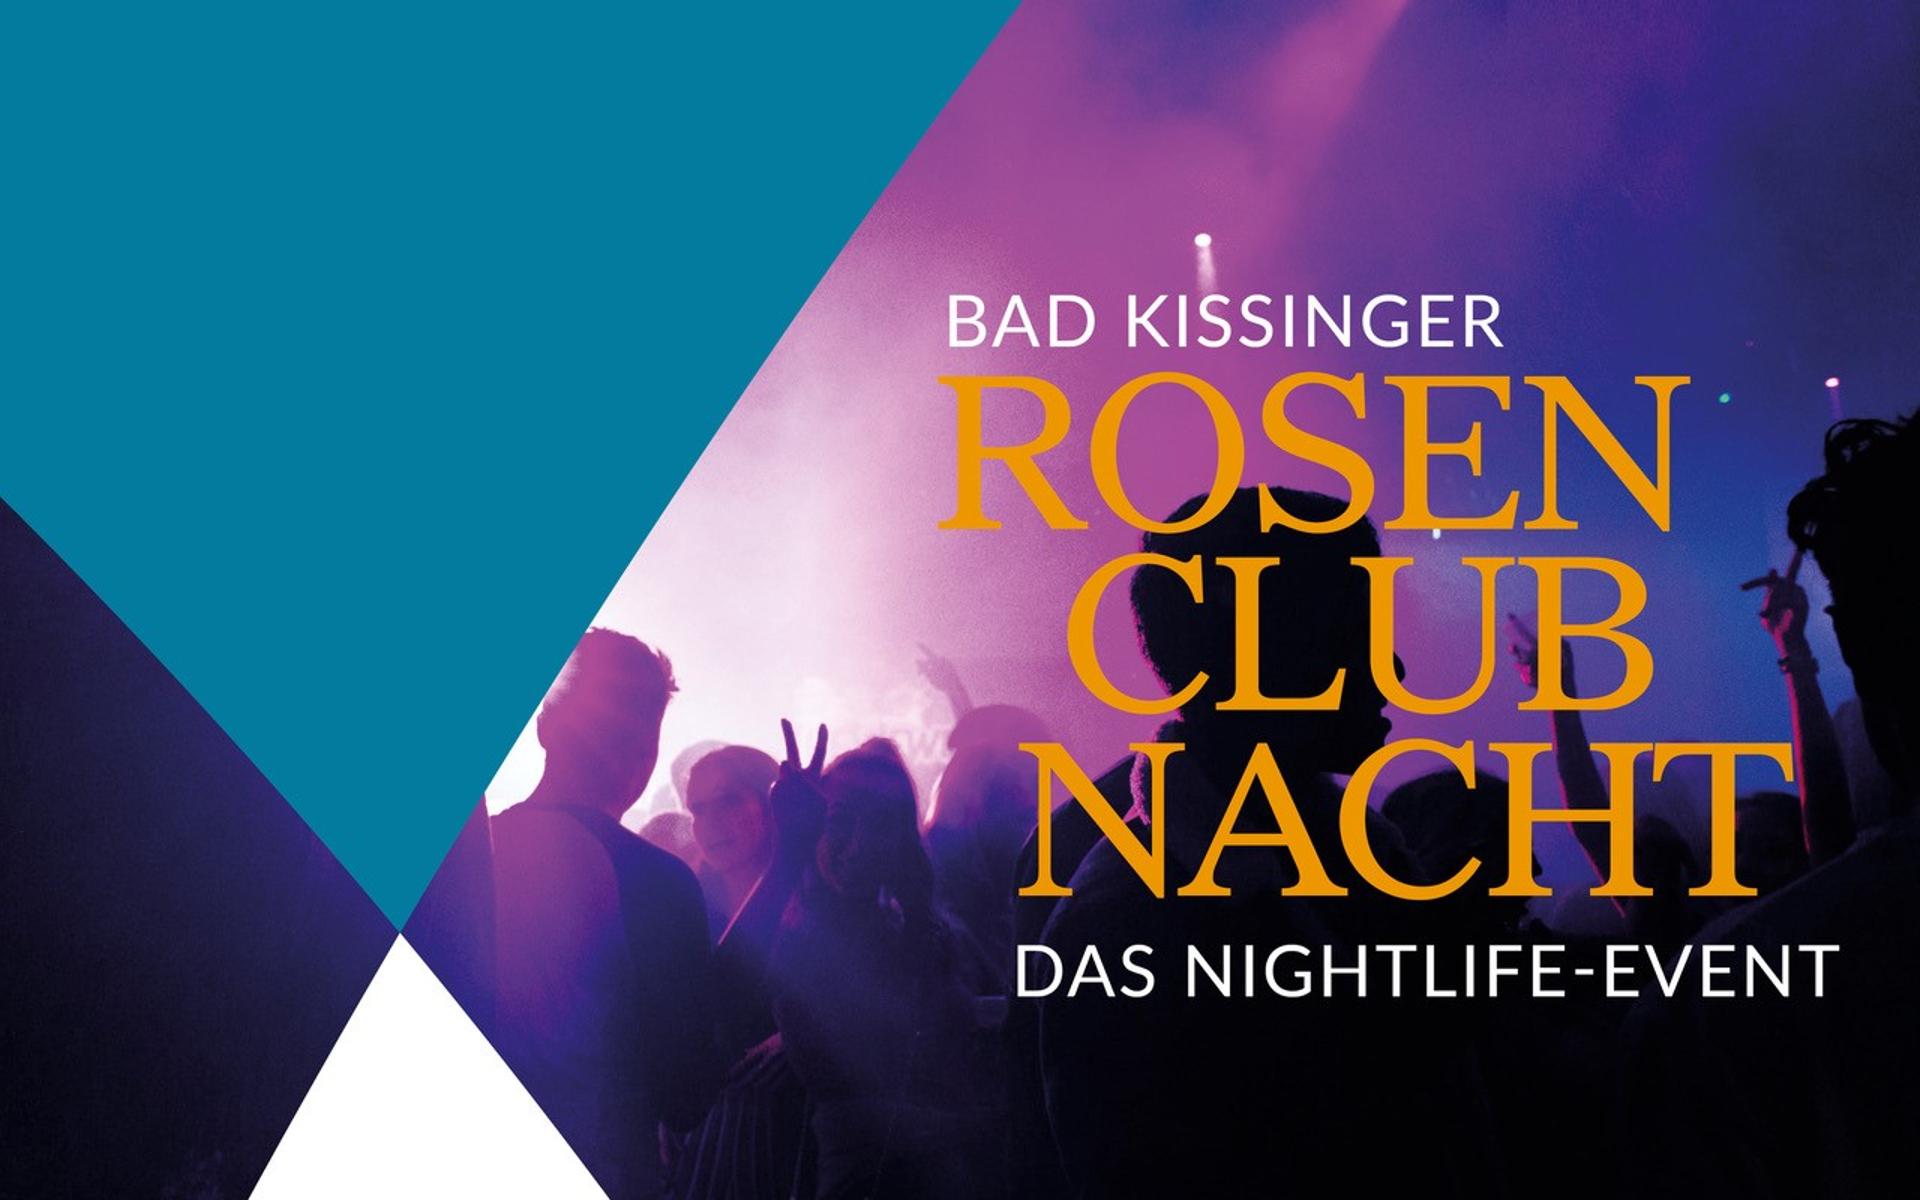 Die Rosen-Clubnacht verspricht typische Club-Atmosphäre mit einer Tanzfläche, einer Bar mit ausgewählten Drinks und DJ Kidd, der für die entsprechende Musik und Stimmung sorgt. Als DJ mit Leidenschaft, Engagement und Erfahrung versteht er es, die ...